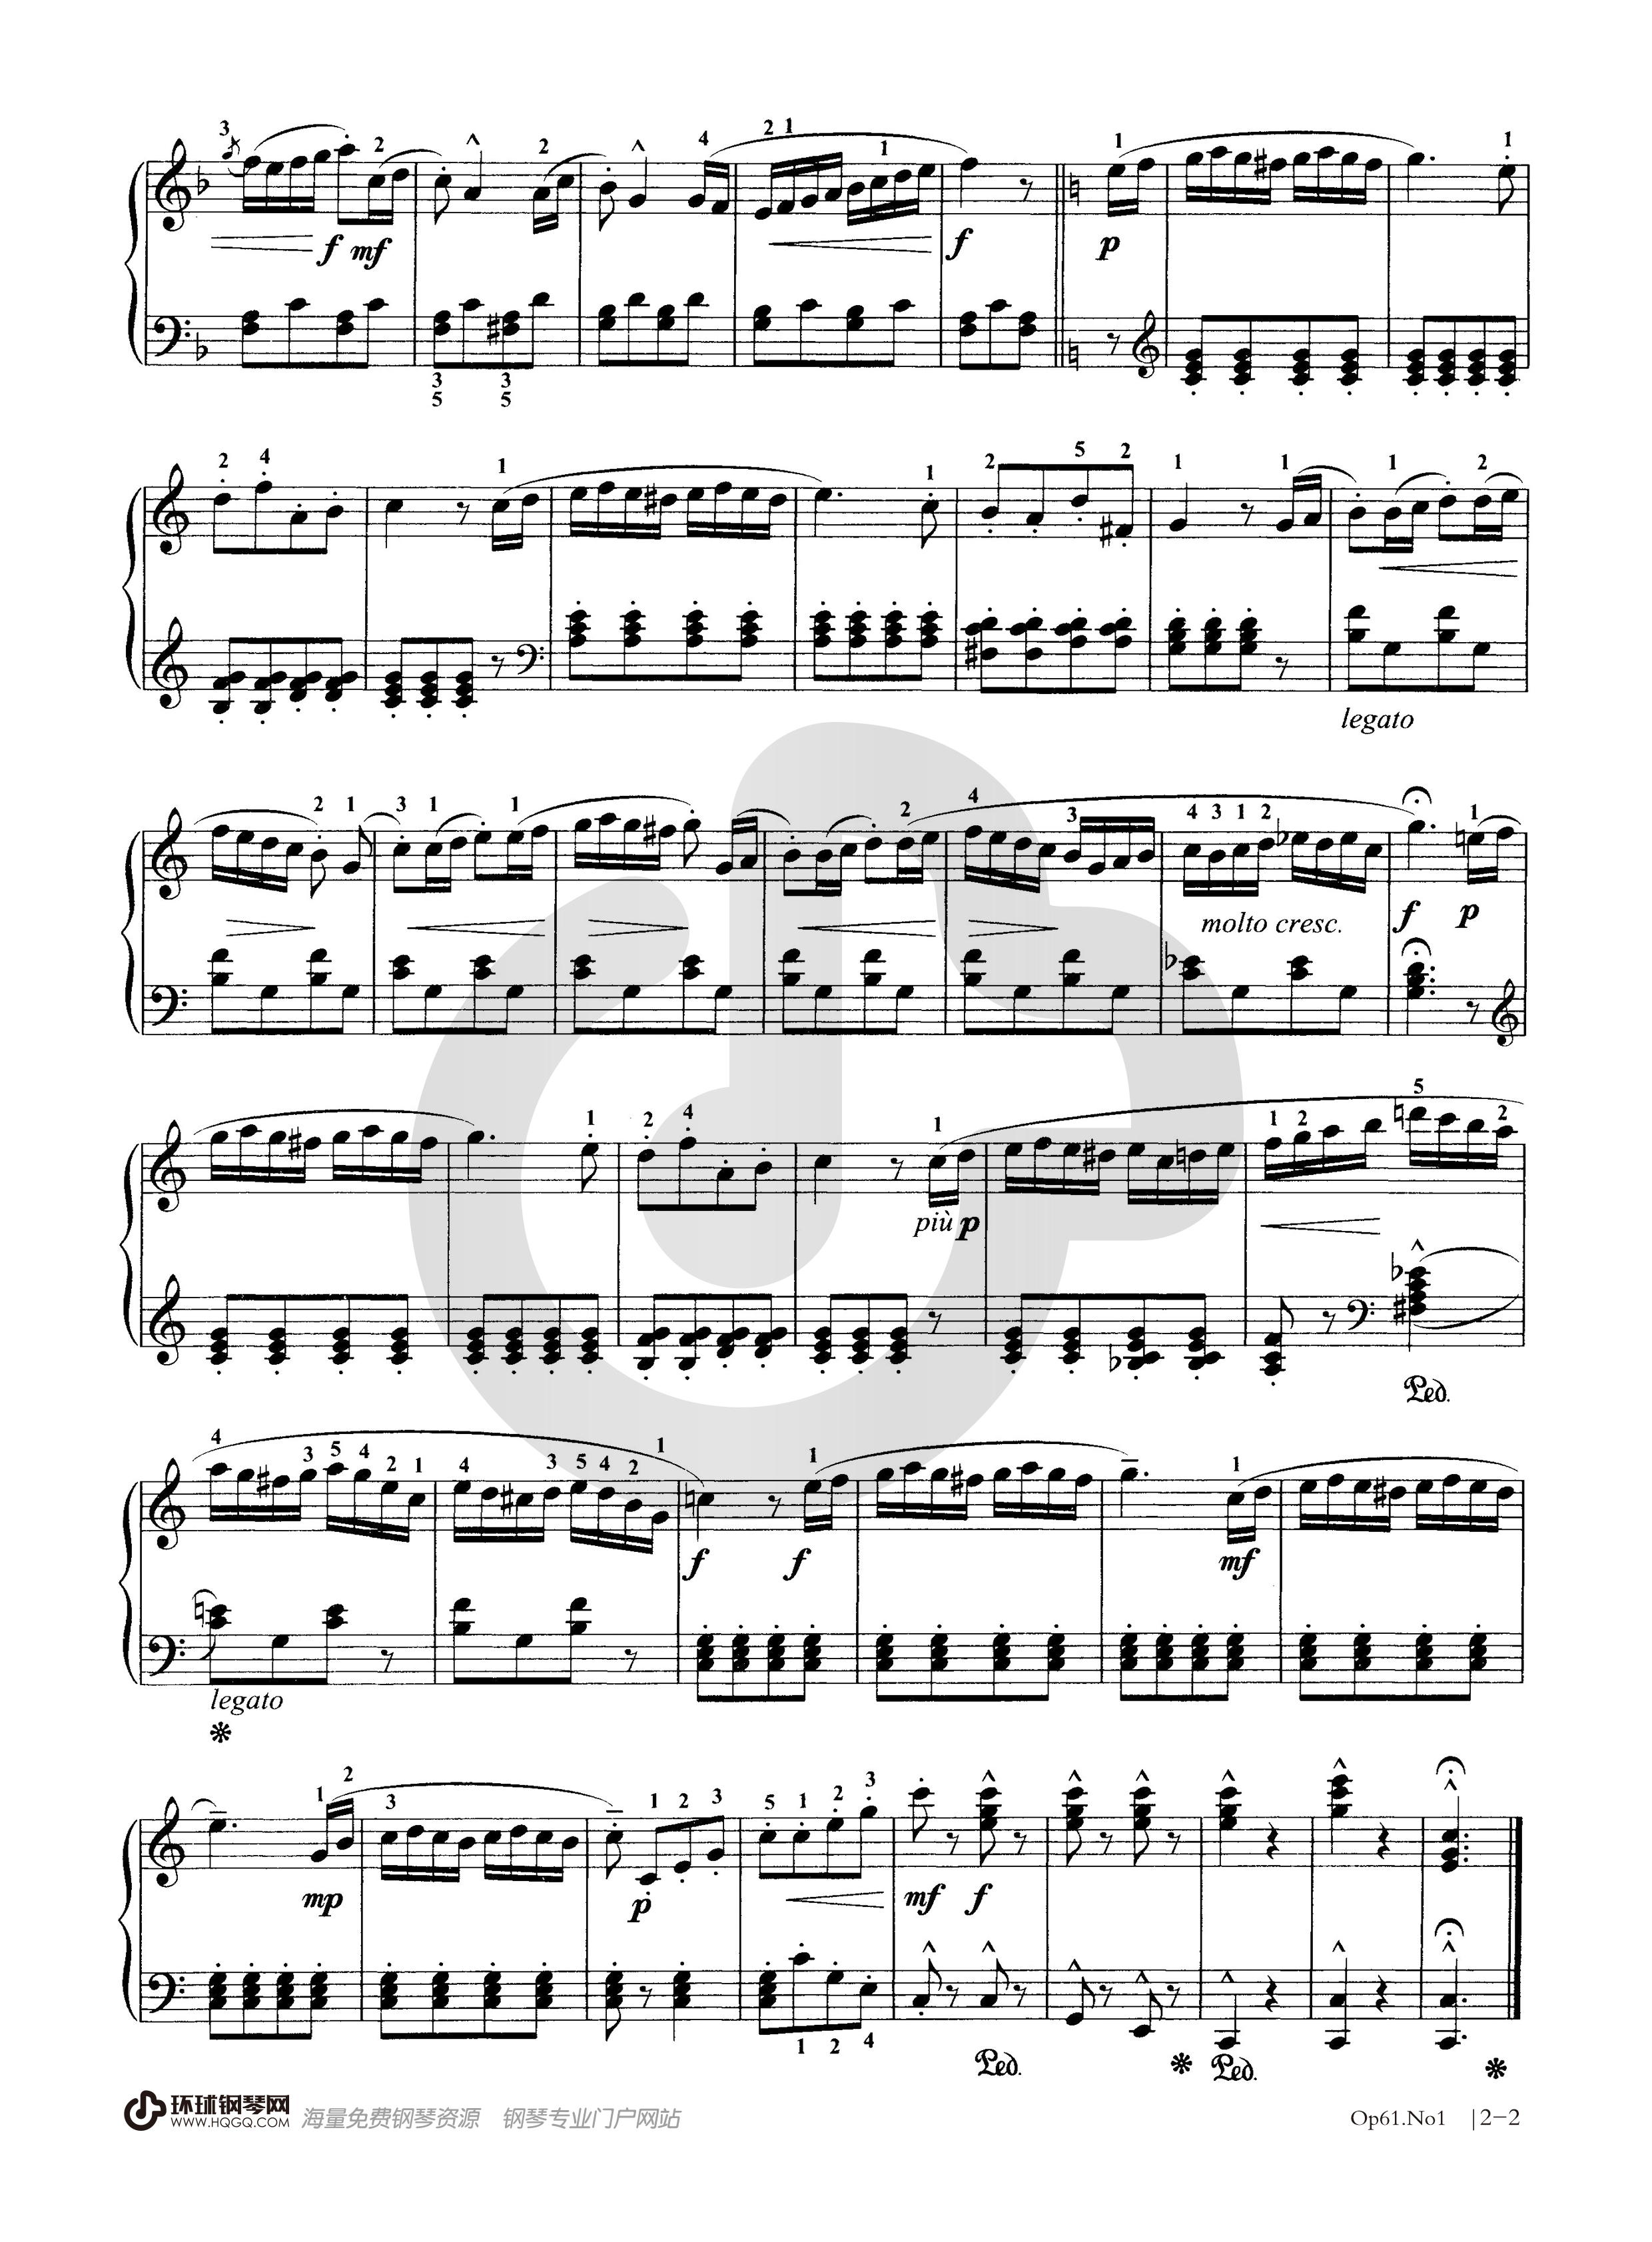 钢琴考级曲目五级谱子(钢琴考级曲目五级谱子图片)